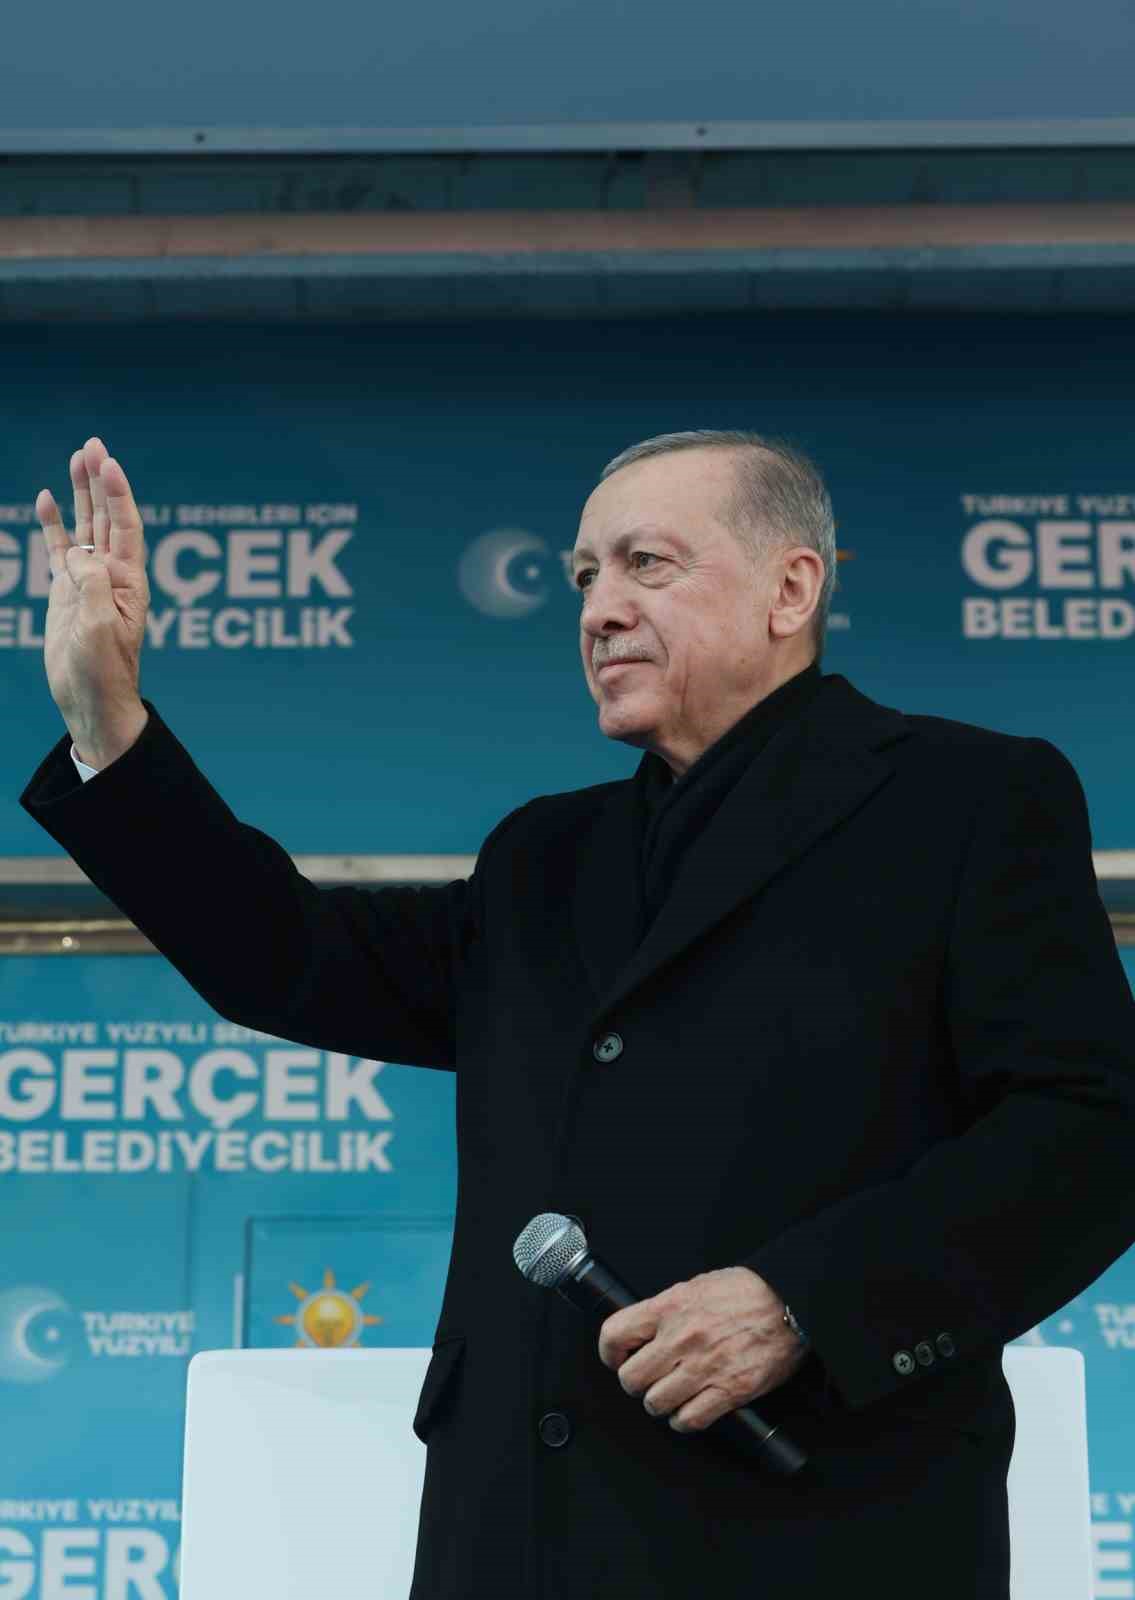 Cumhurbaşkanı Erdoğan: "Muhalefet kendi içlerinde horoz dövüşünden beter bir kavga halinde"
